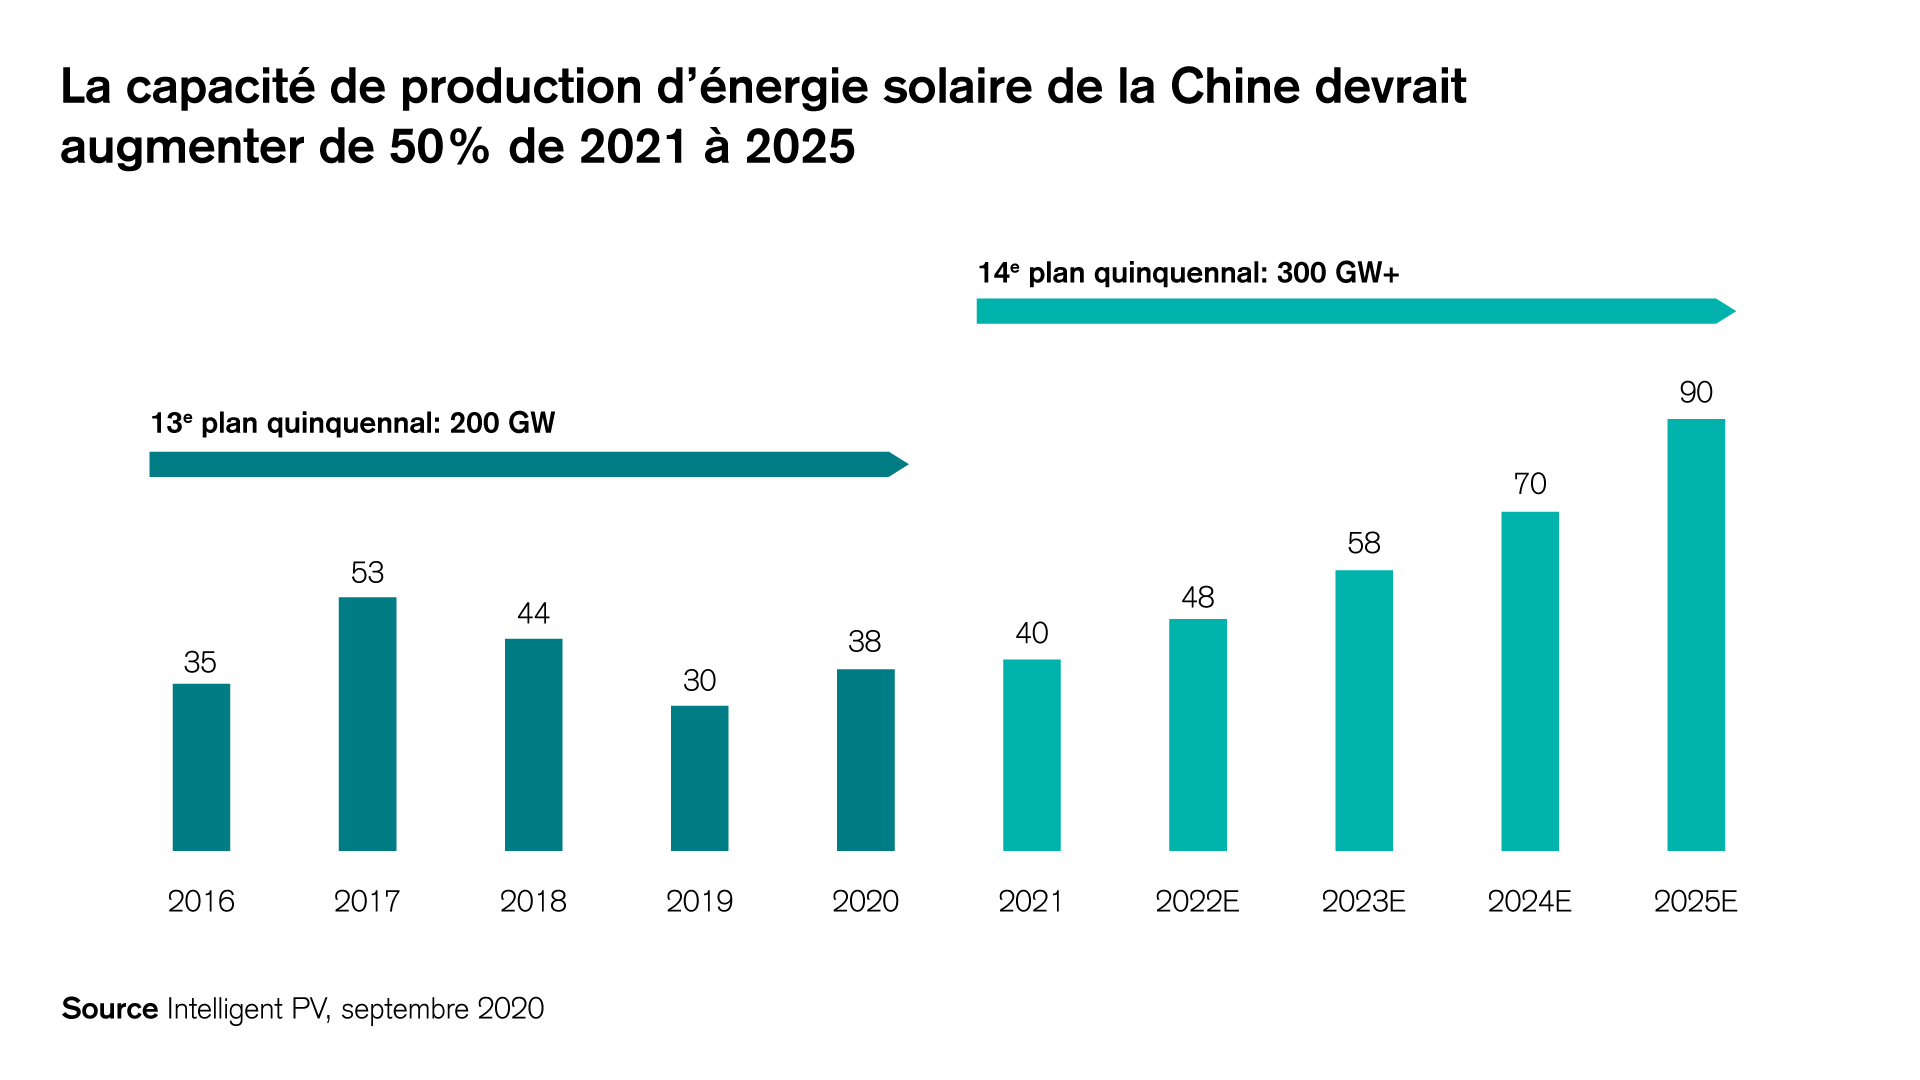 La capacité de production d'énergie solaire de la Chine devrait augmenter de 50% de 2021 à 2025